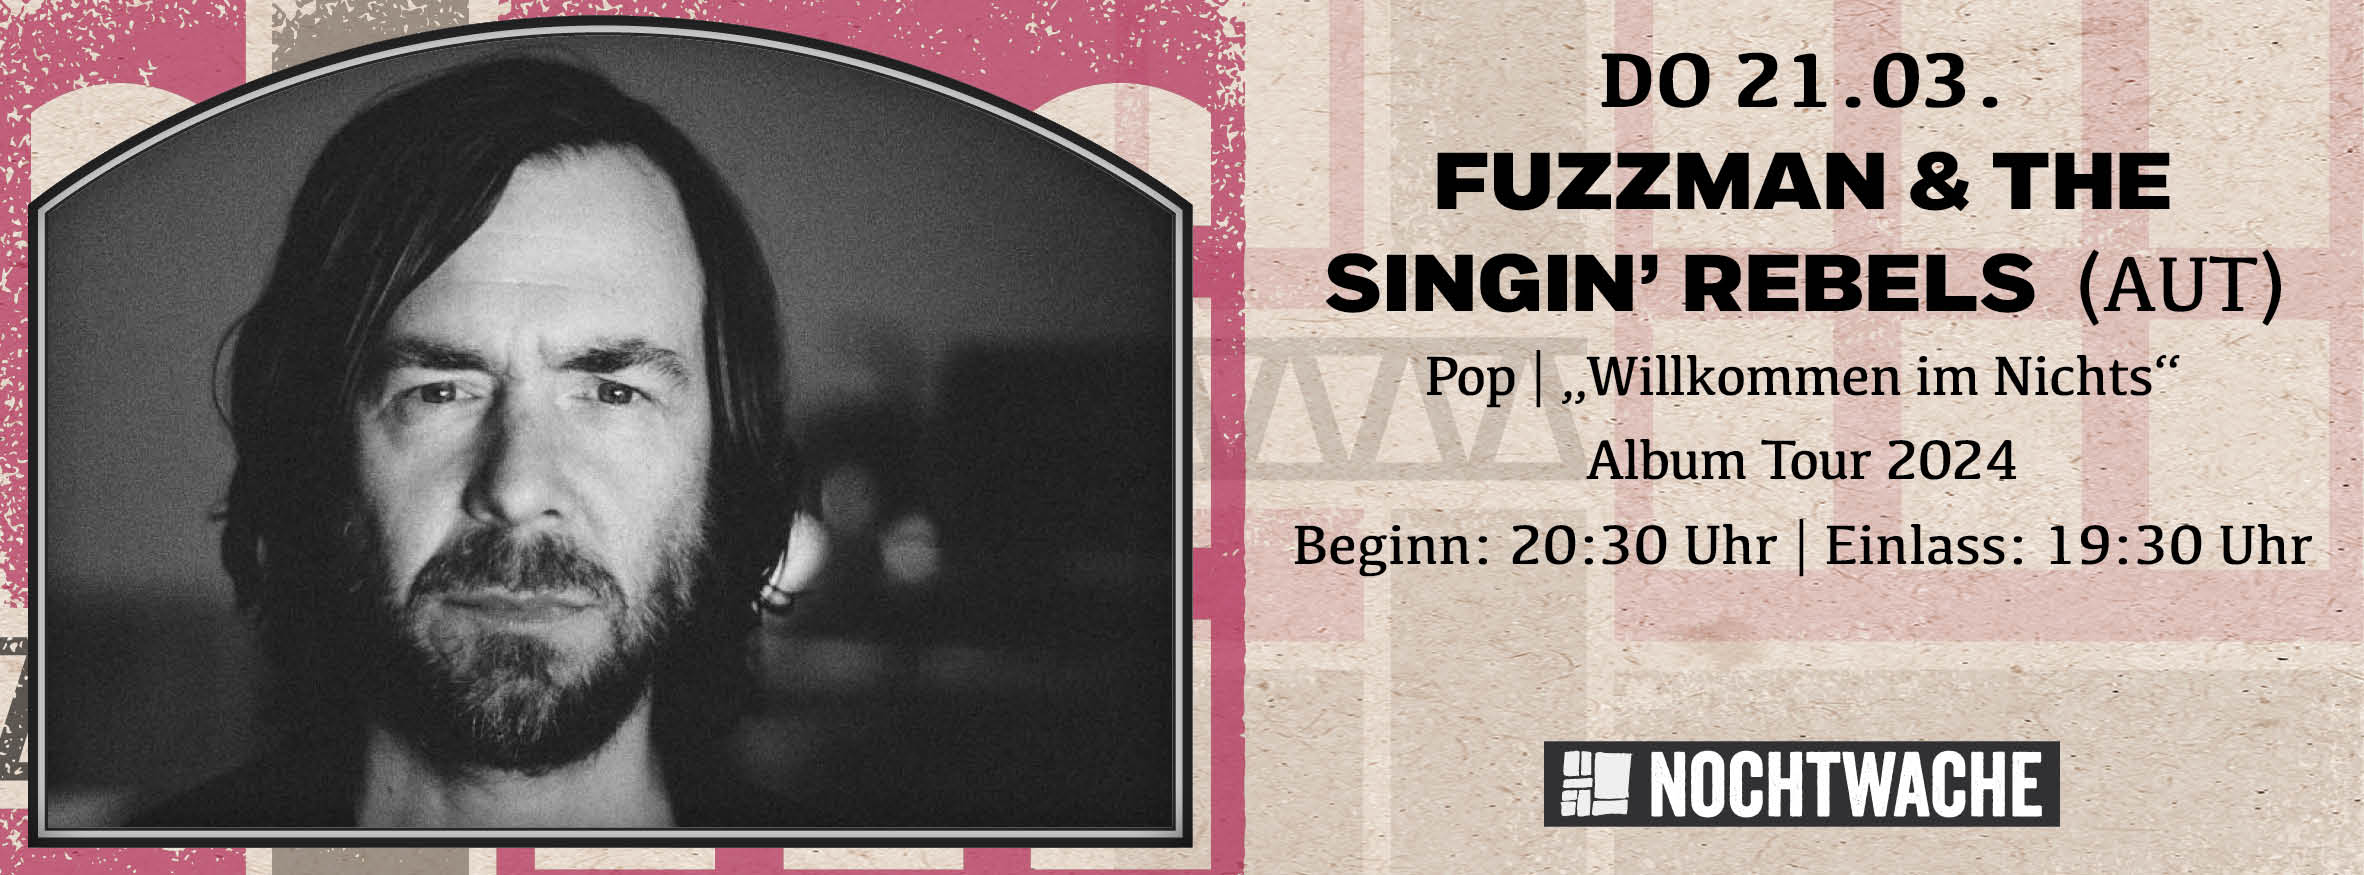 FUZZMAN & THE SINGIN’ REBELS (AUT)